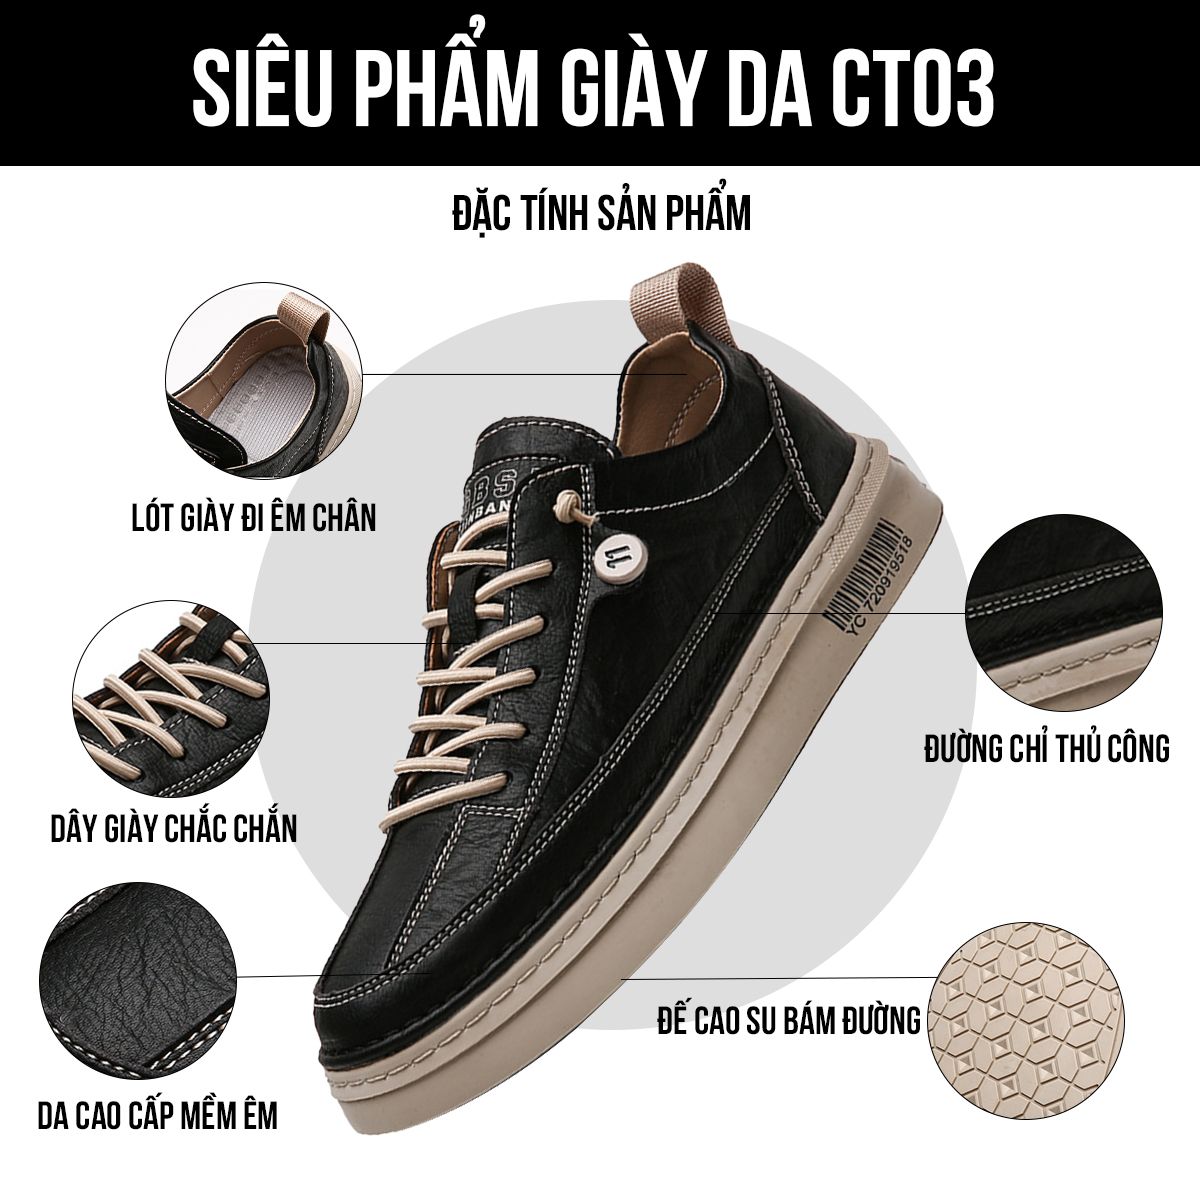 Giày thể thao nam CT03 đặc tính sản phẩm